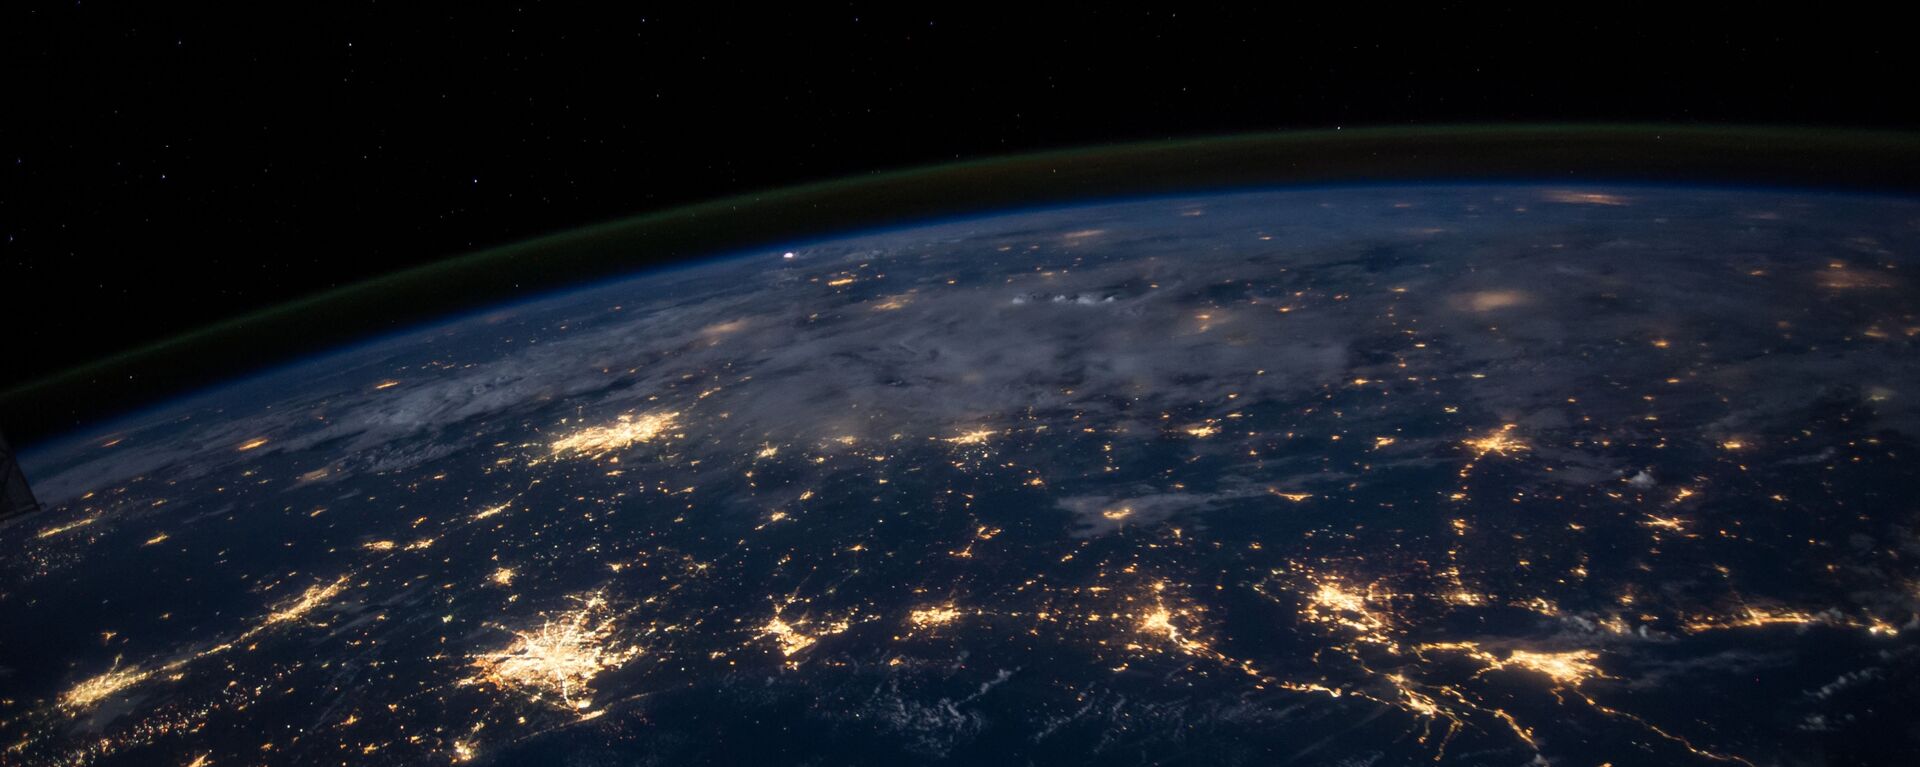 La Tierra vista desde el espacio (imagen referencial) - Sputnik Mundo, 1920, 12.04.2021